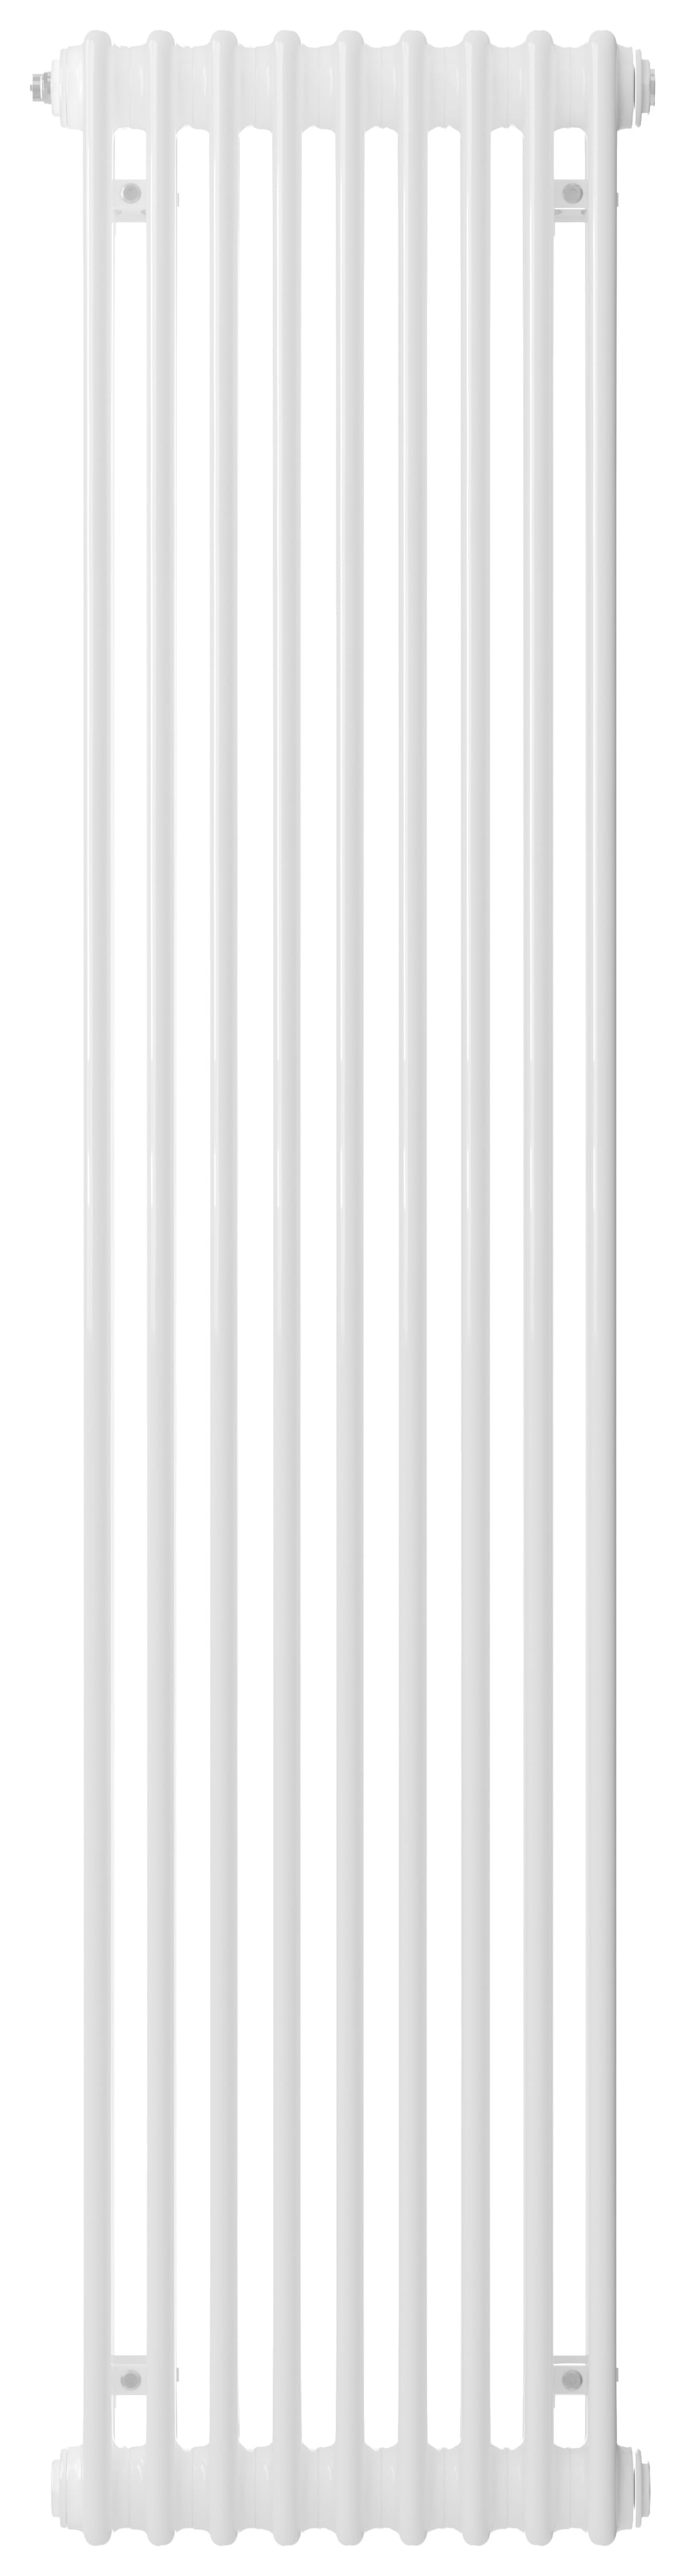 Image of Henrad 2 Column Vertical Designer Radiator - White 1800 x 440 mm